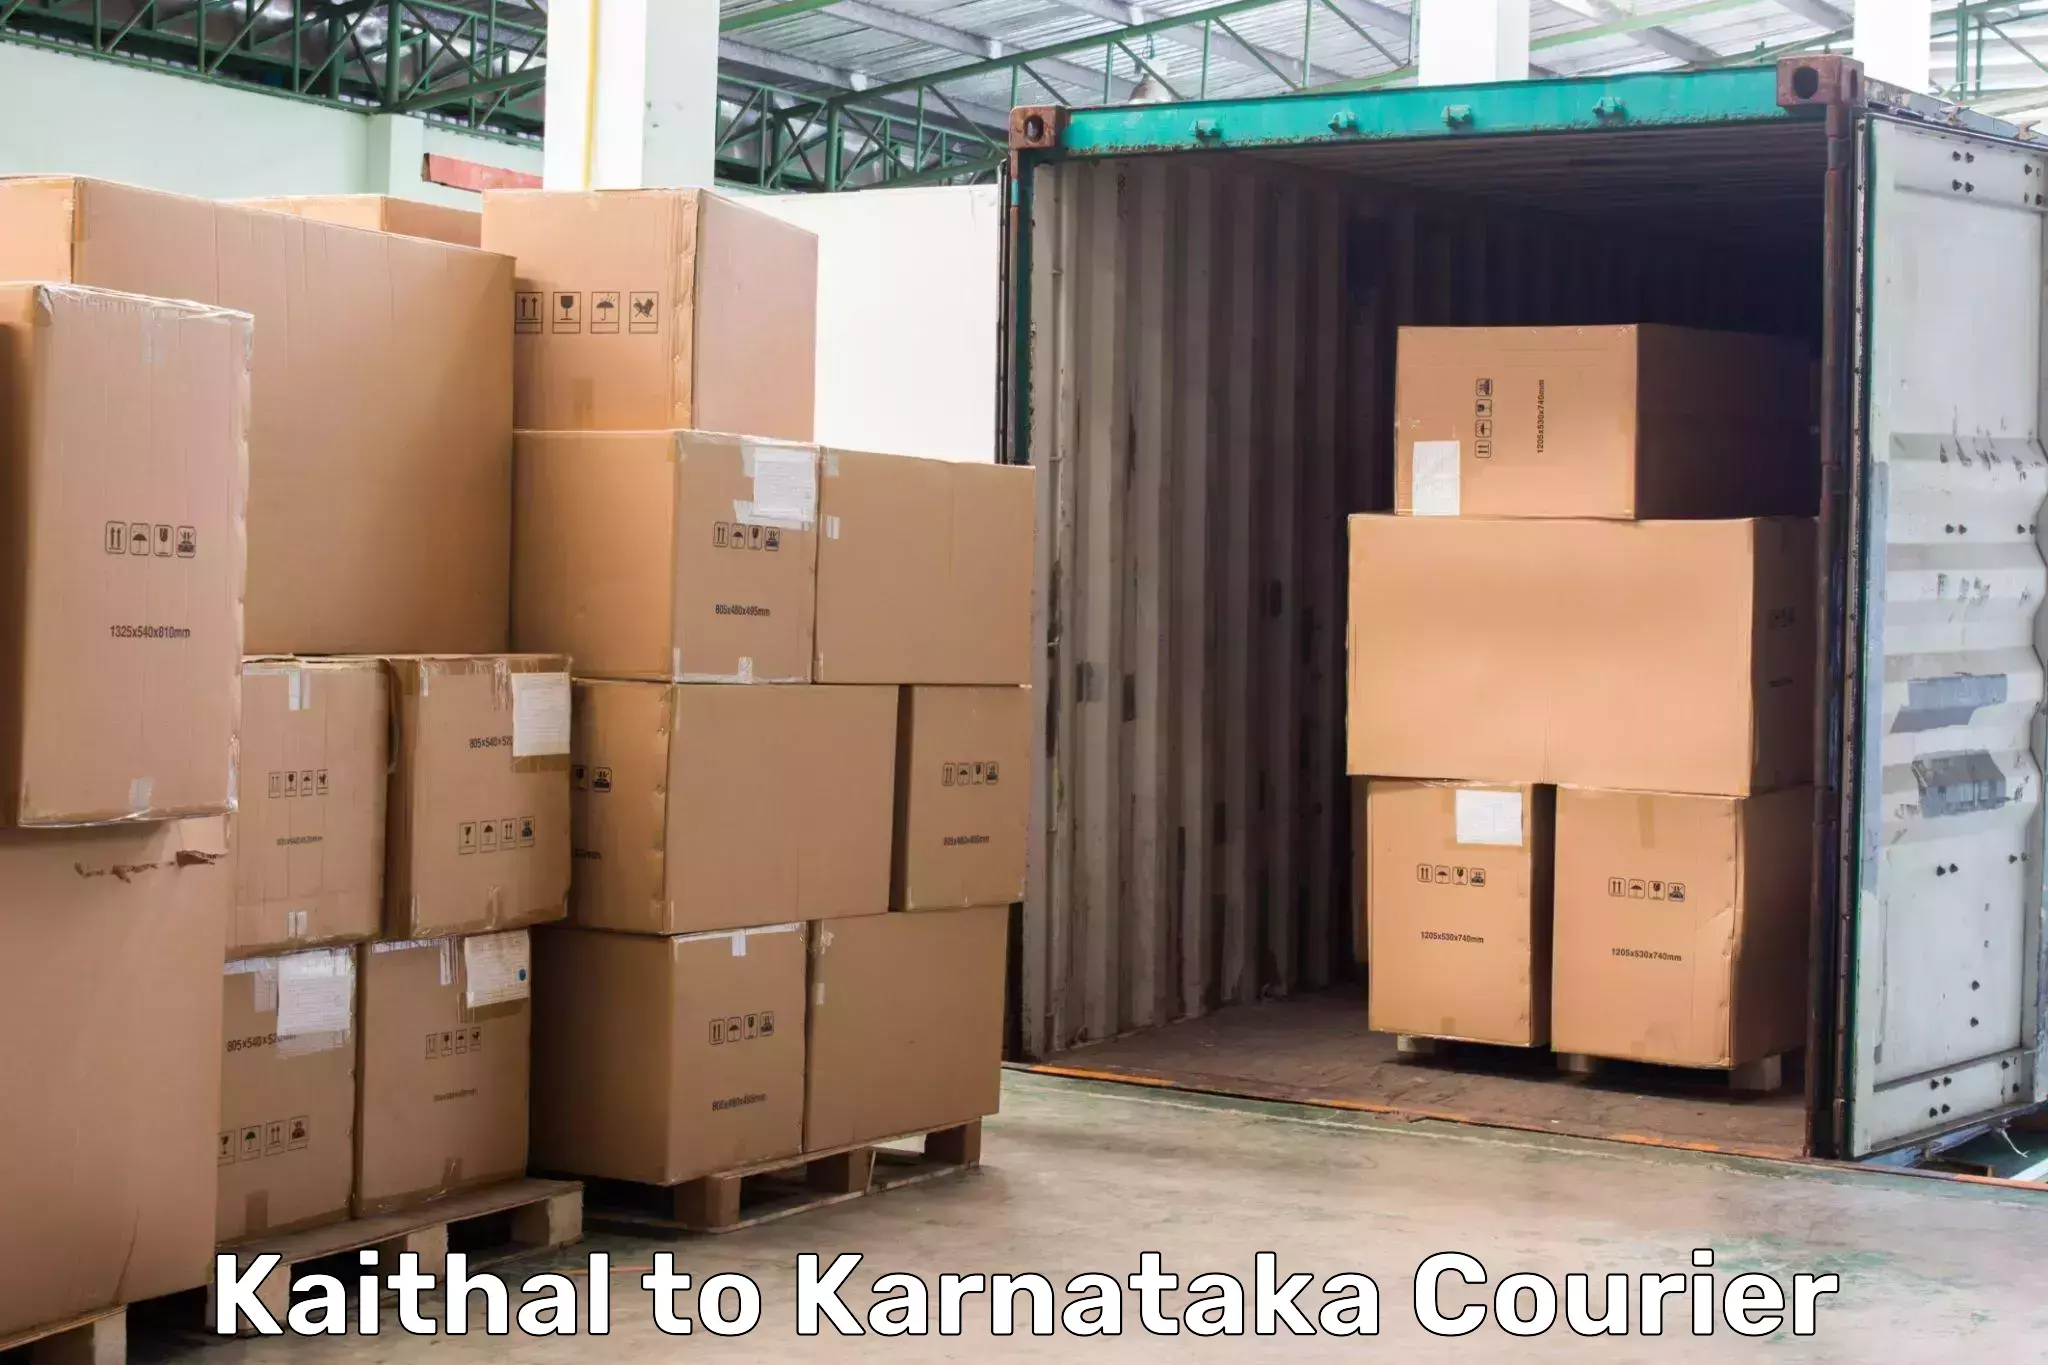 Subscription-based courier Kaithal to Sringeri